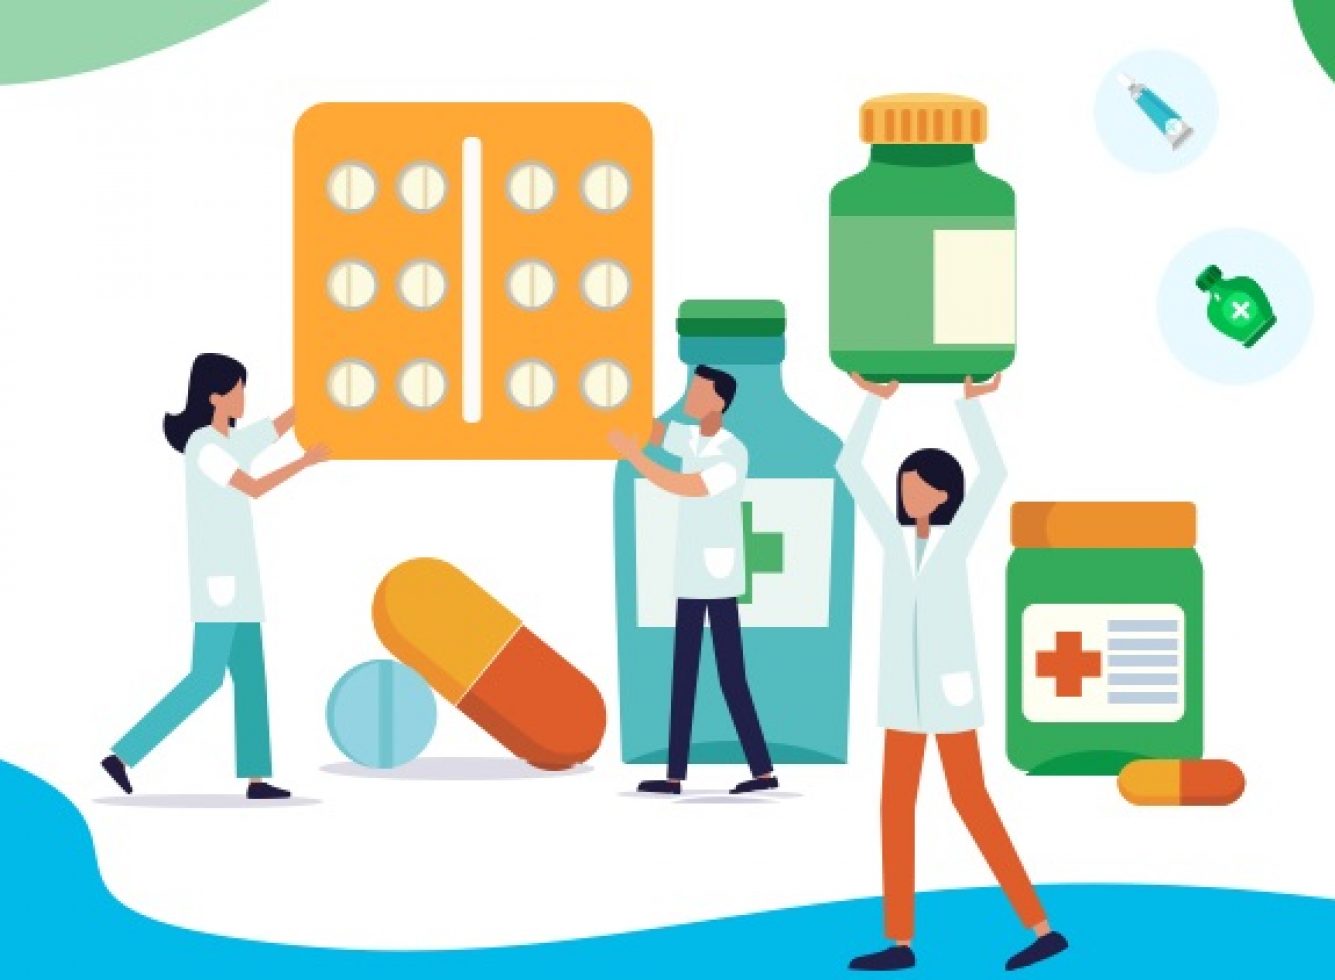 Online Pharmacy: изображения, стоковые фотографии и векторная графика Shutterstock